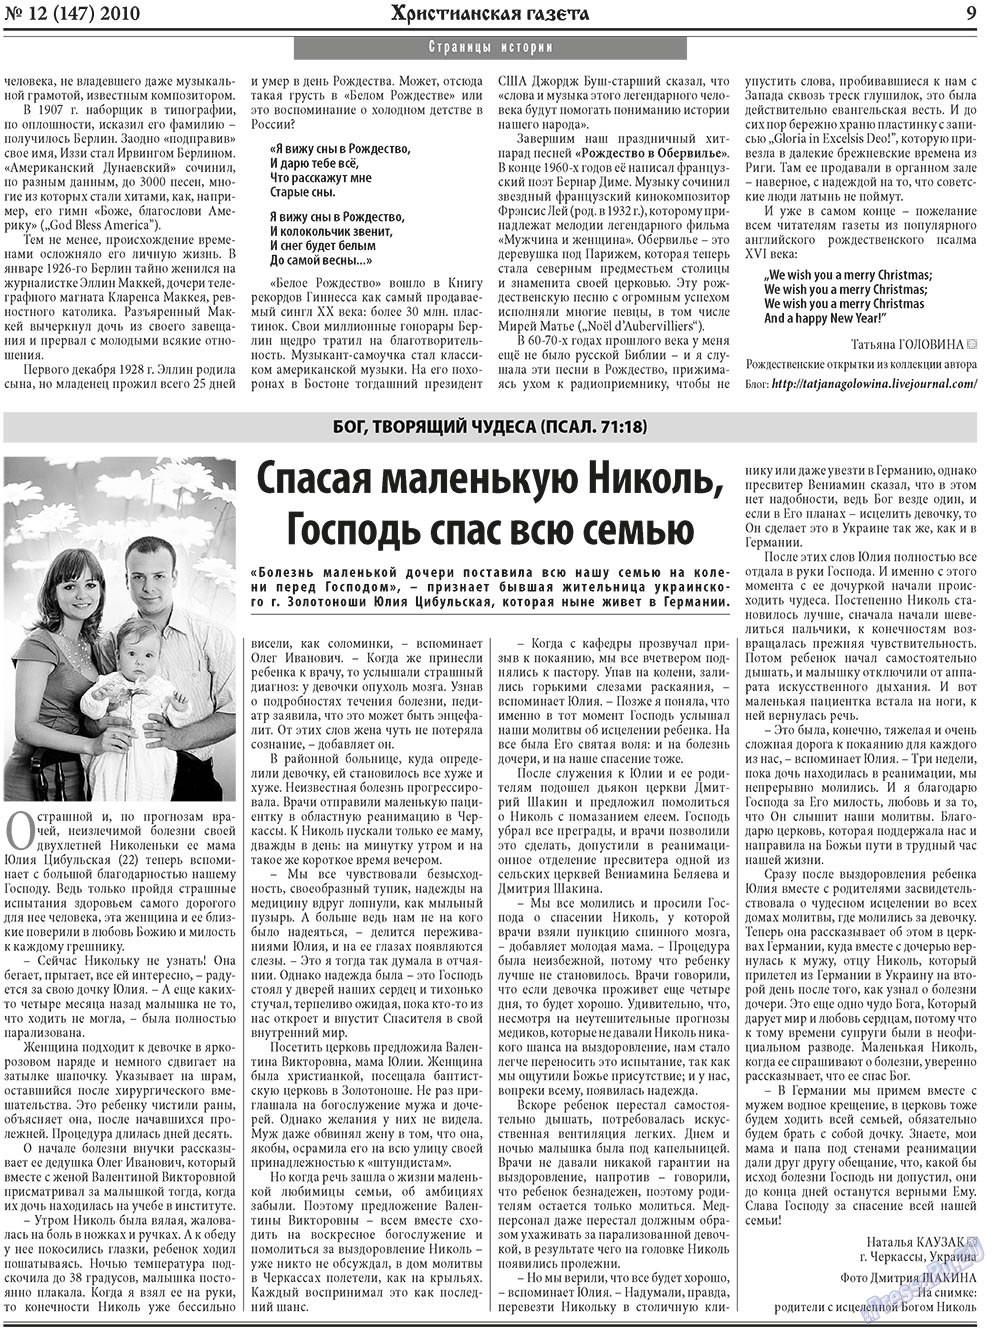 Христианская газета (газета). 2010 год, номер 12, стр. 9